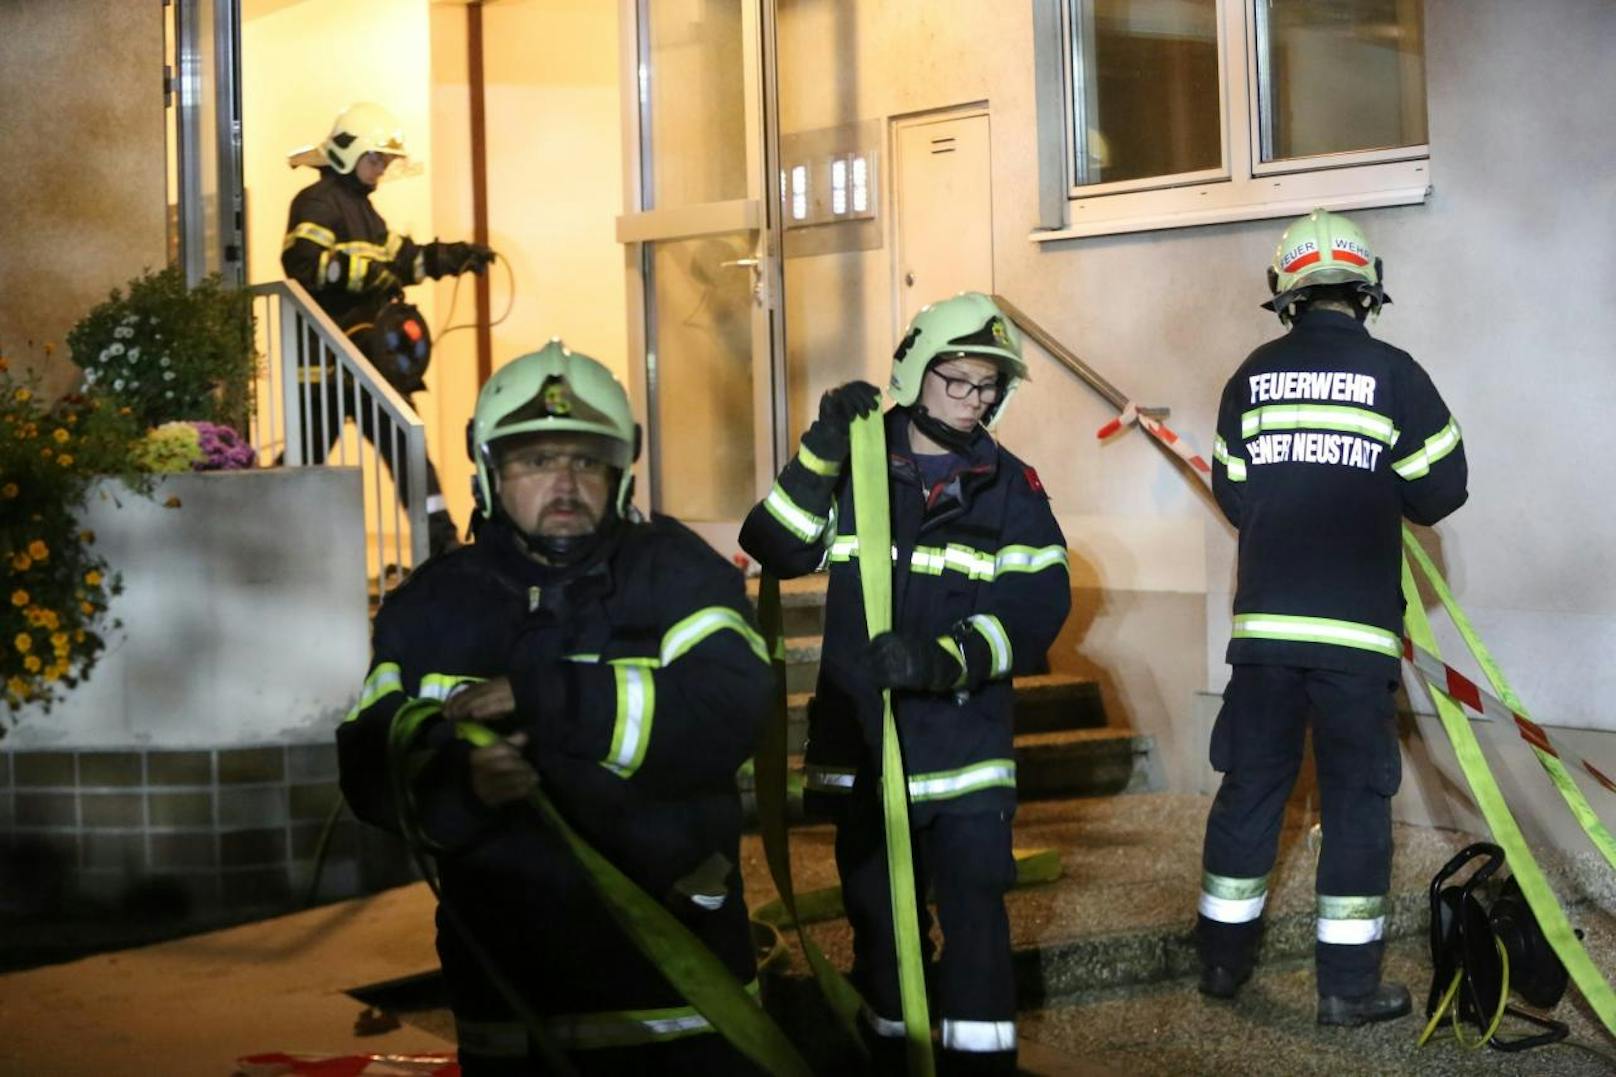 Brand in Mehrparteienhaus Wr. Neustadt - 43 Bewohner mussten aus Gebäude, darunter 4 Kleinkinder